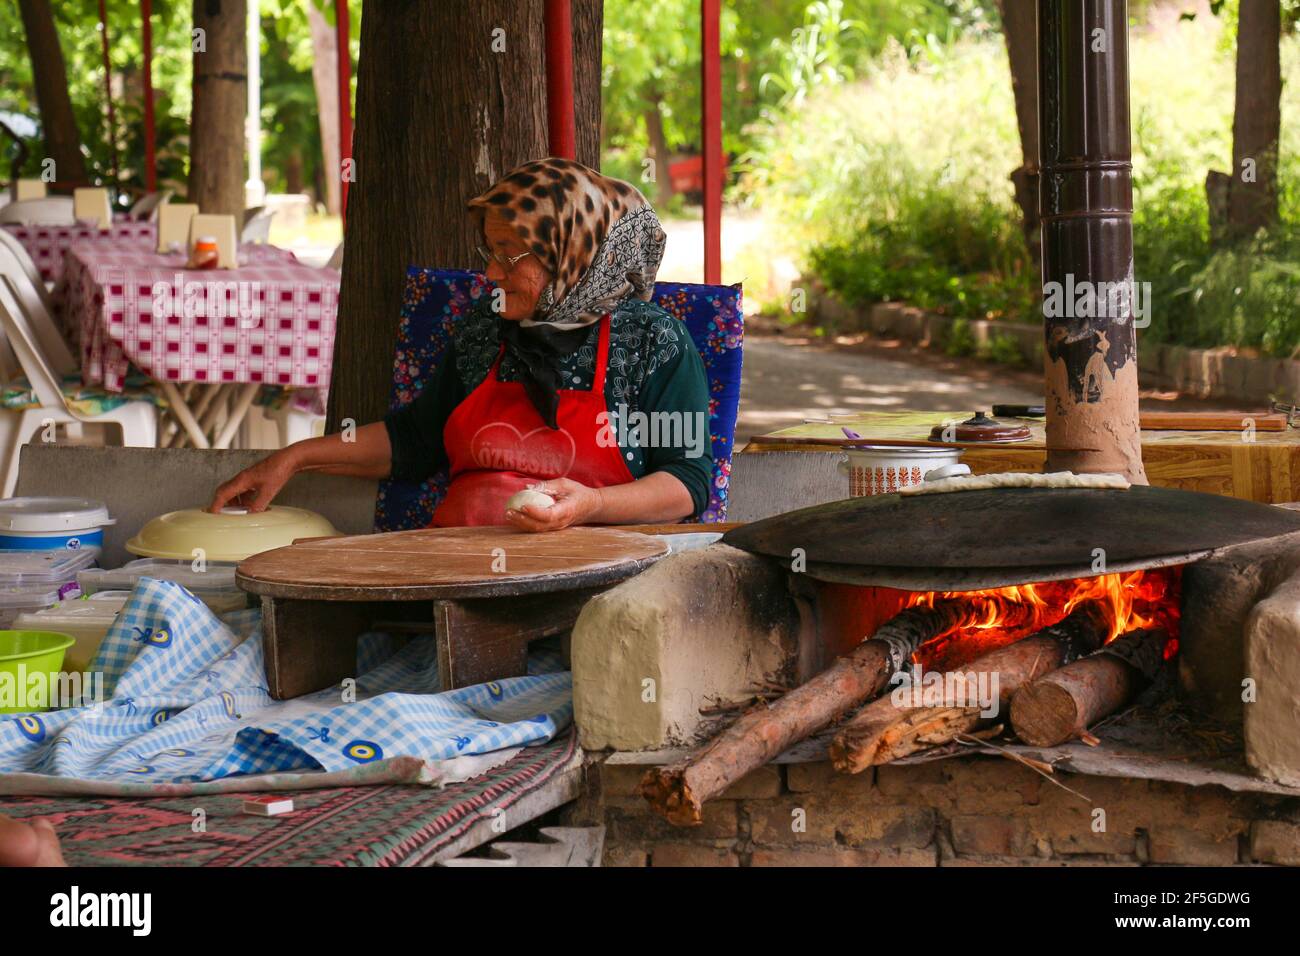 ANTALYA, TURQUIE - 30 mai 2015 : traditionnellement habillée, la vieille femme est makingTurkish crêpes au feu dans le parc. Banque D'Images